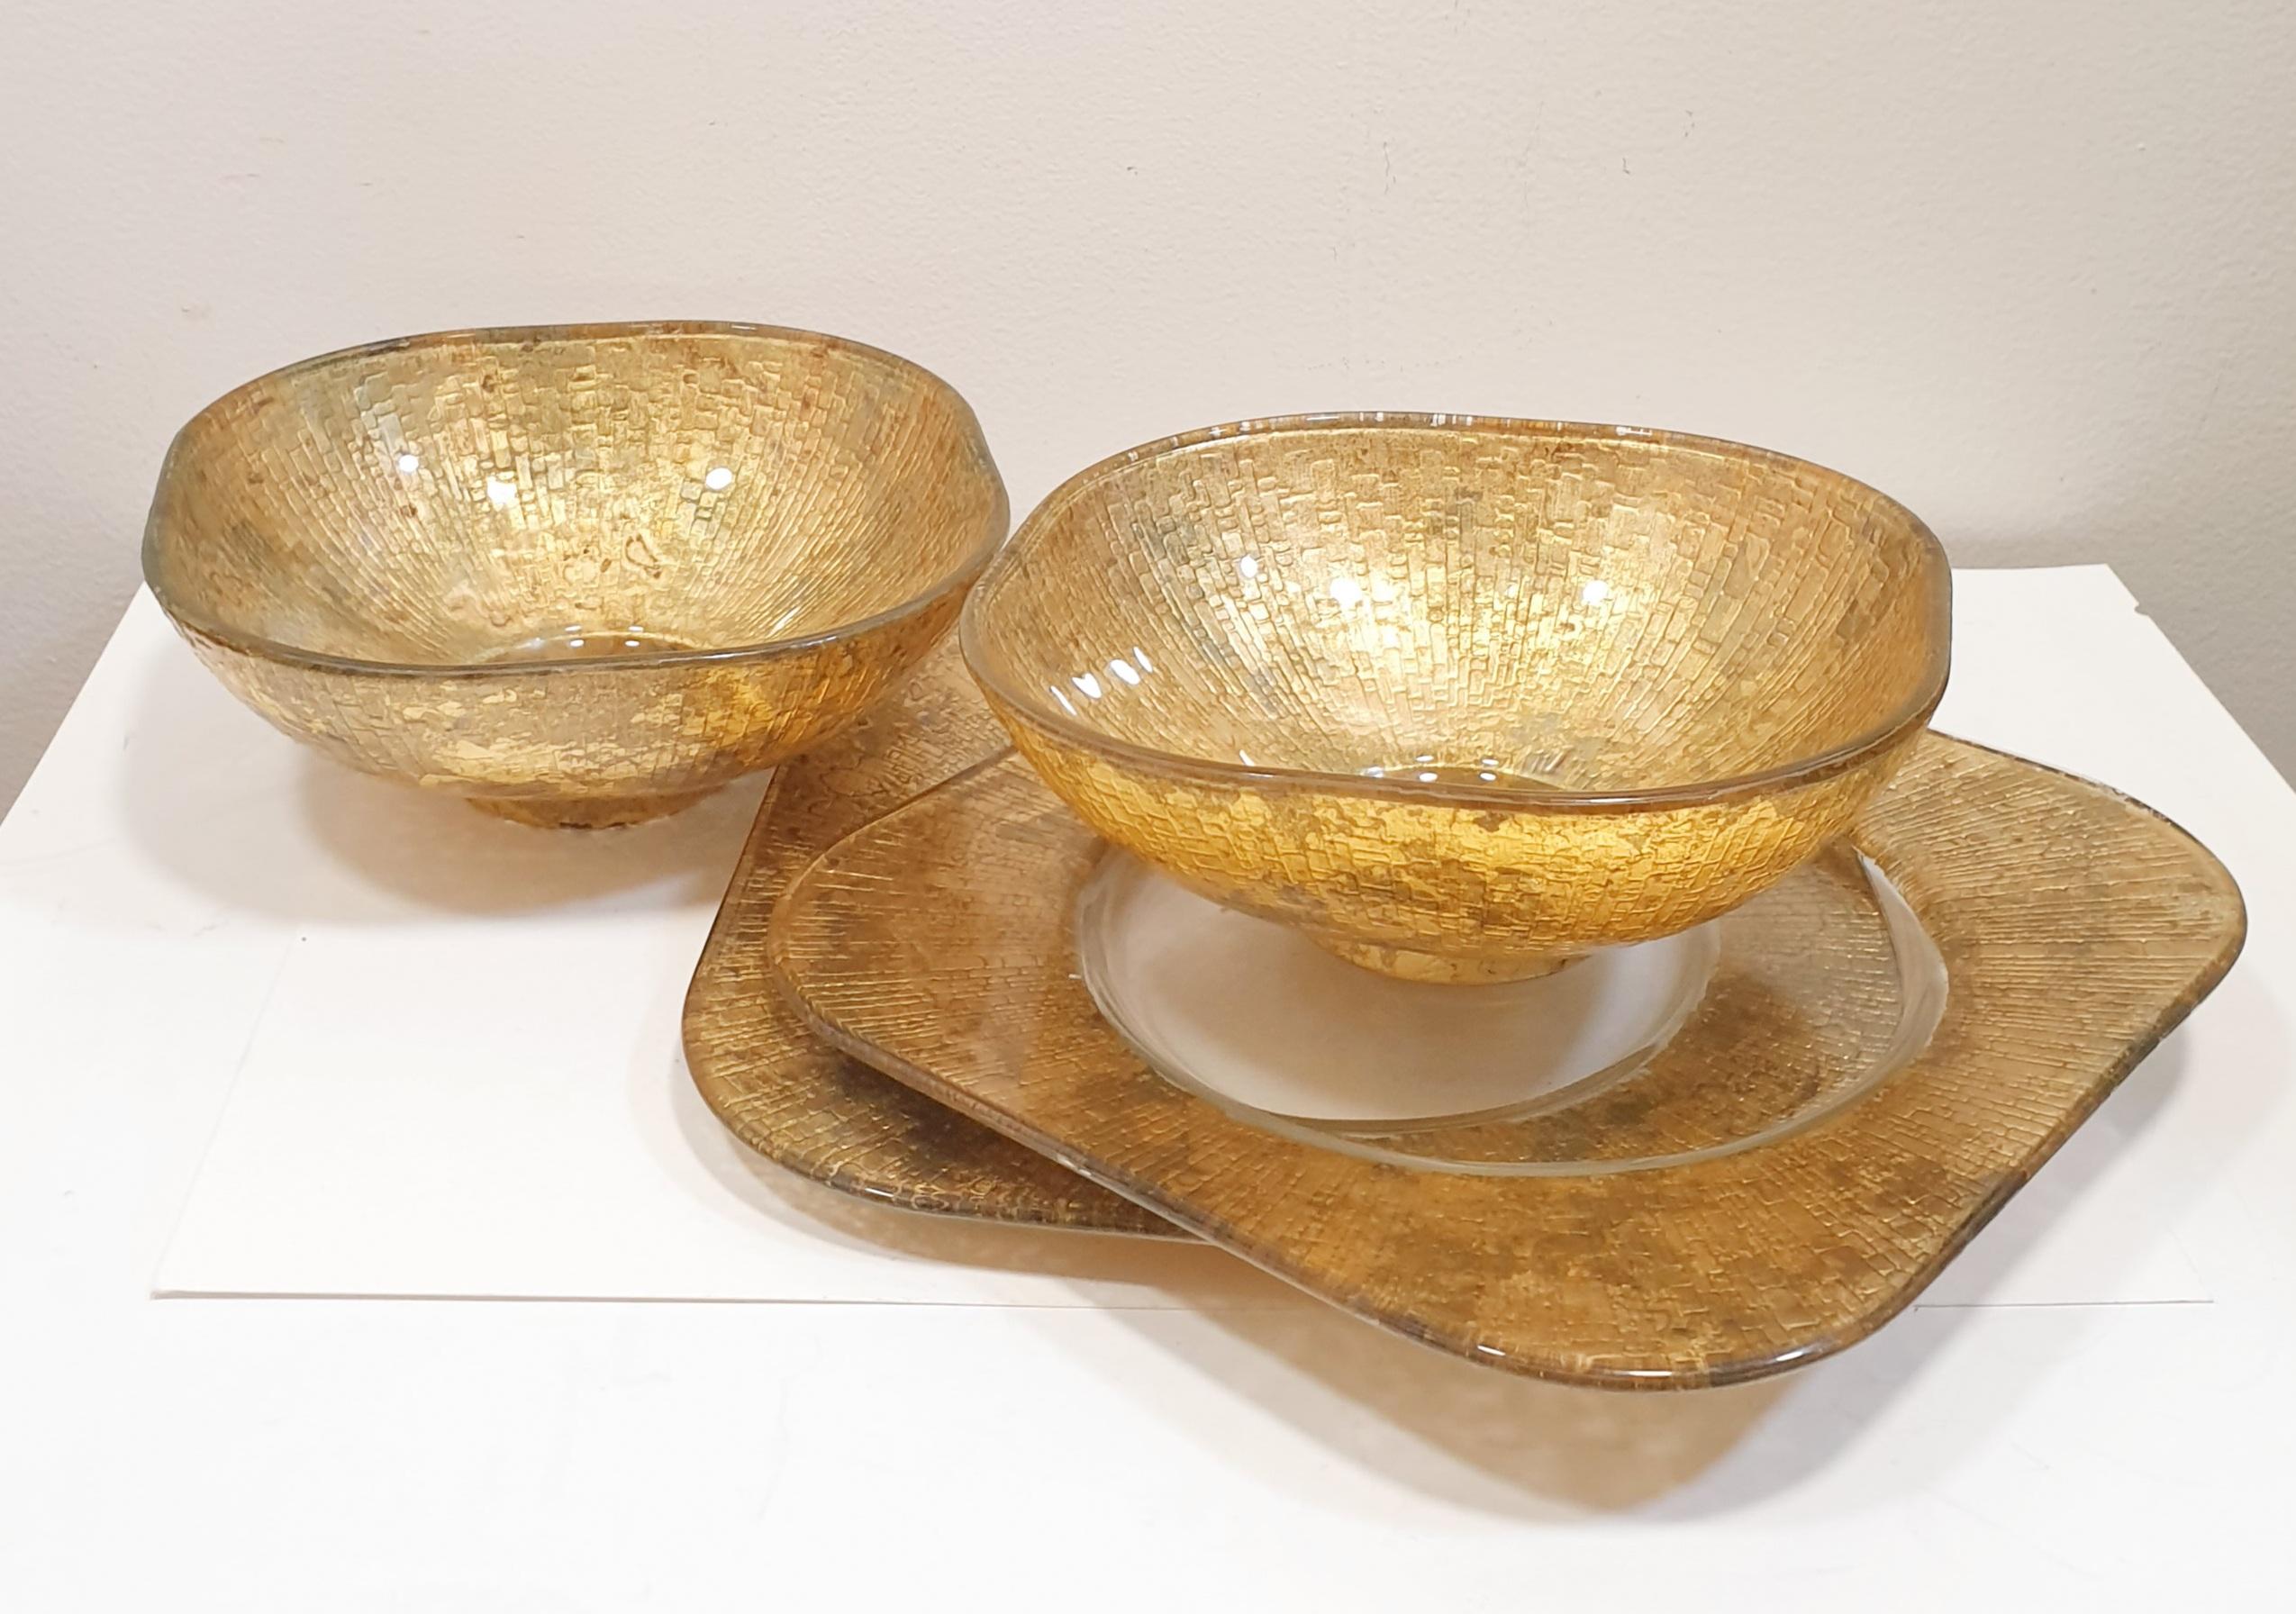 Quadratische Candy Bowl aus Gold mit Craquelé-Schale von Lesley Roy, signiert 2